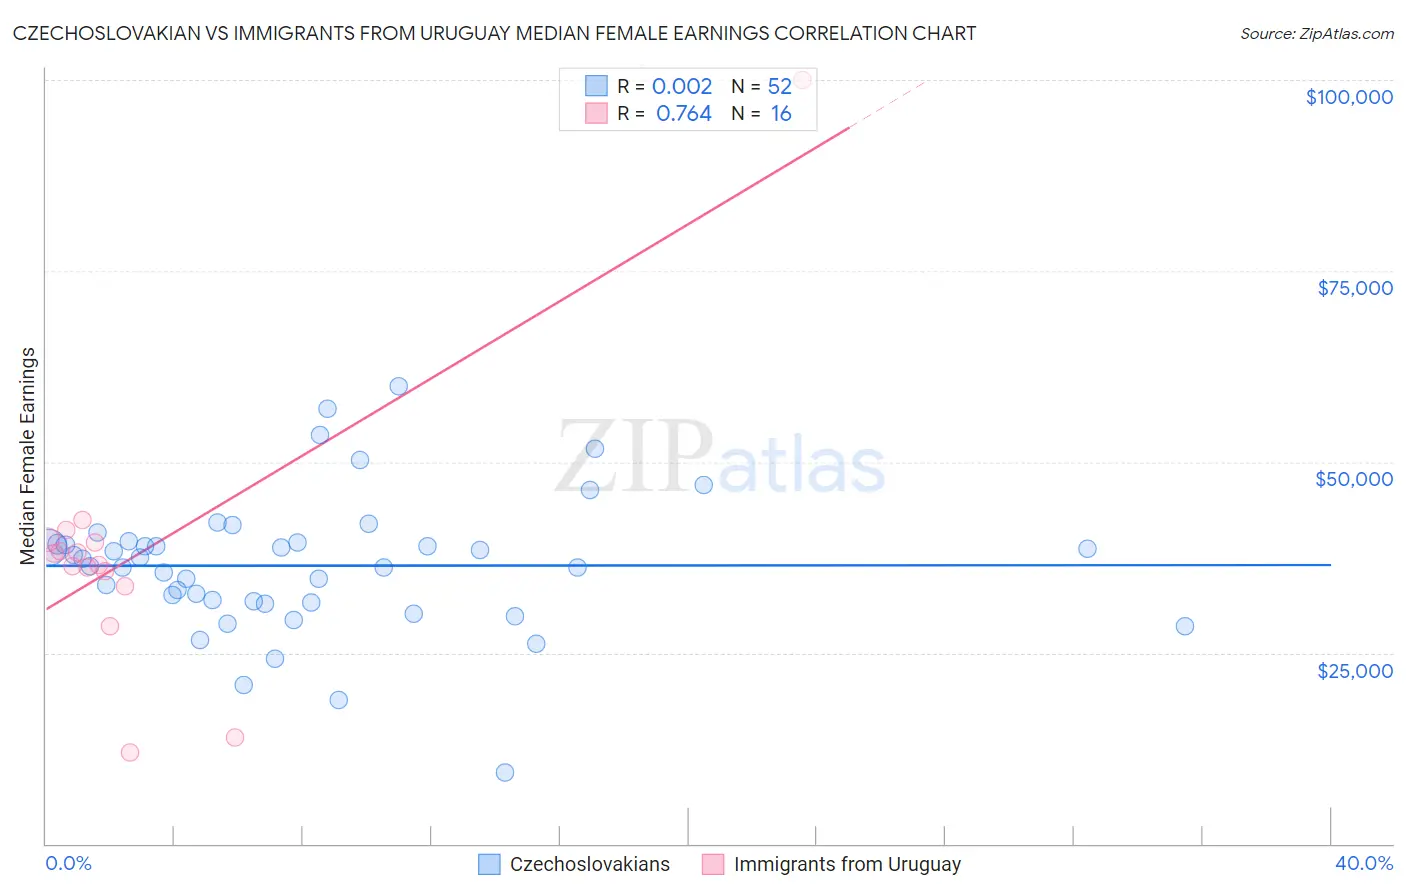 Czechoslovakian vs Immigrants from Uruguay Median Female Earnings